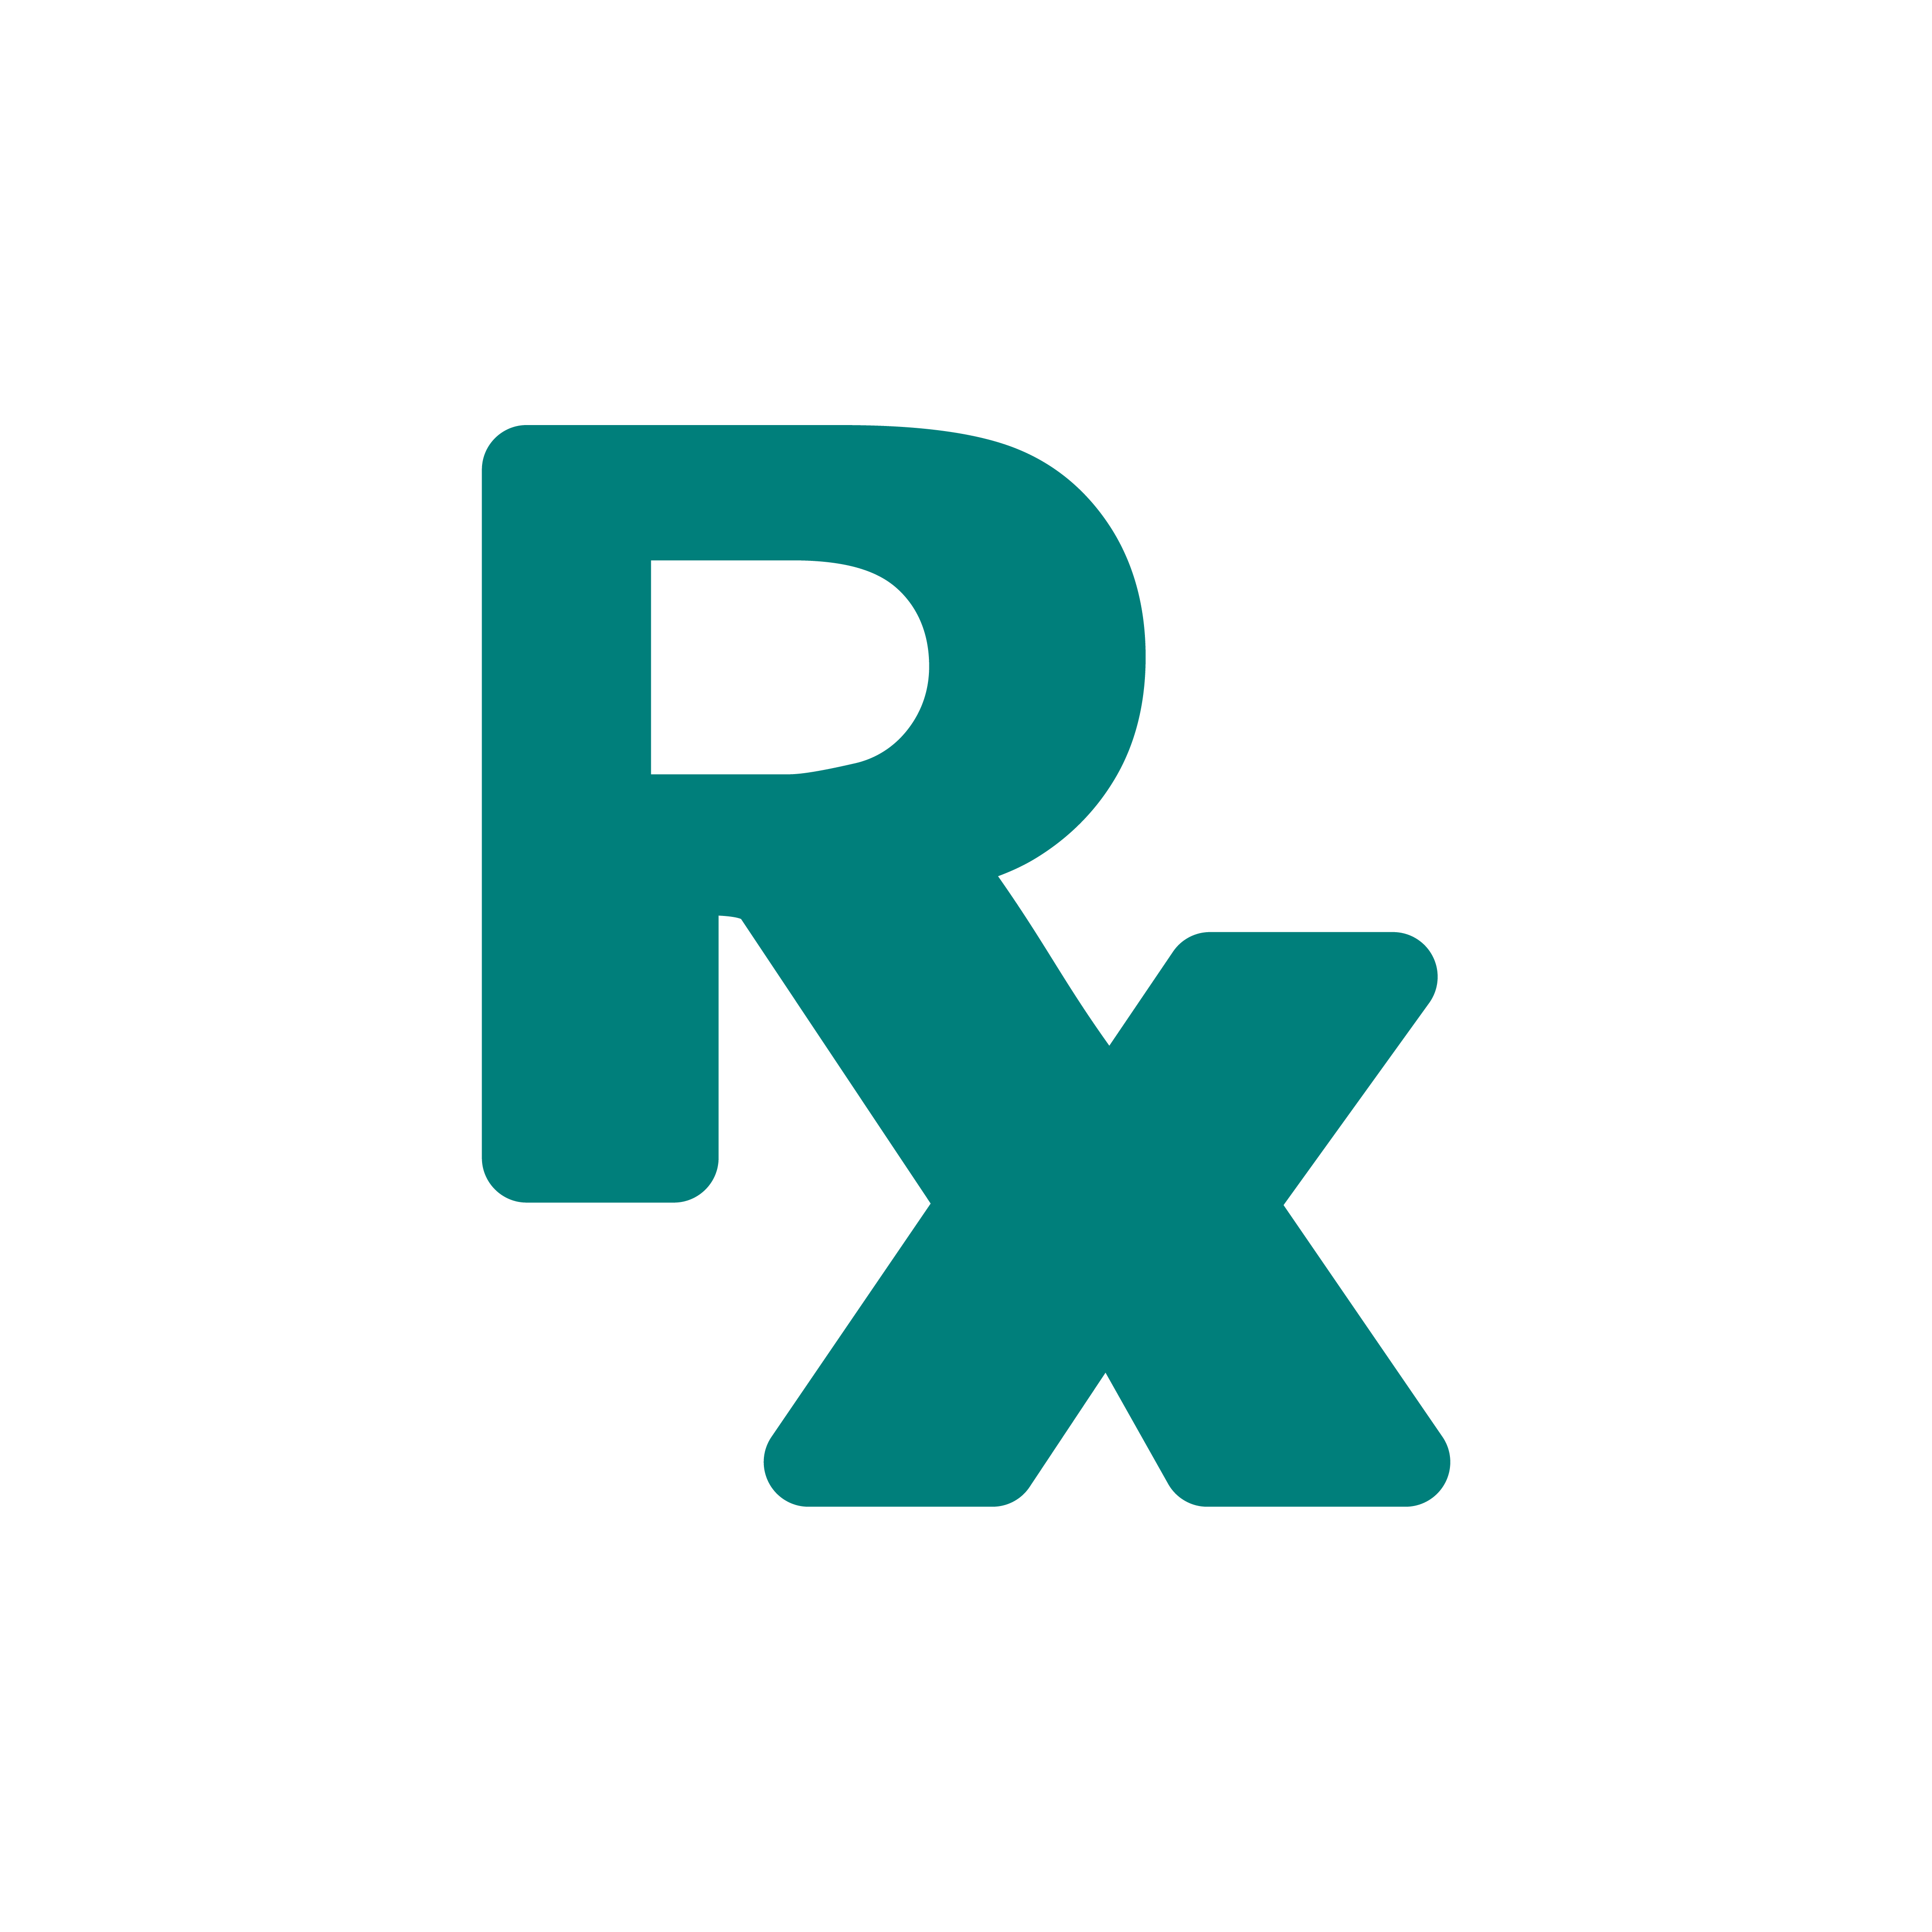 simbolos da farmacia. significado do simbolo Rx em farmacia-medd design-2022